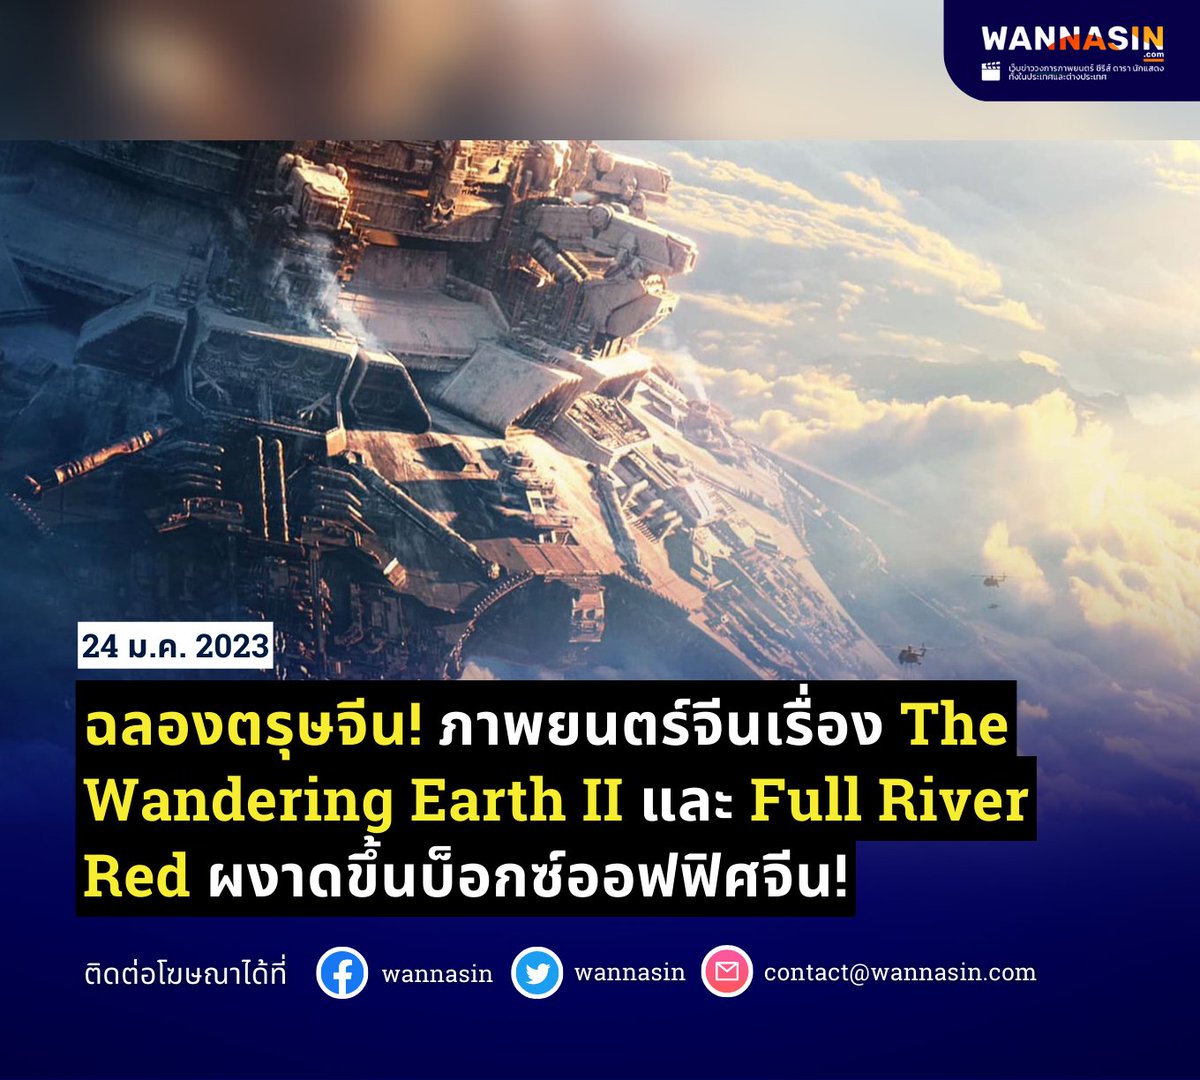 ในช่วงตรุษจีนนี้ บ็อกซ์ออฟฟิศจีนมีการแข่งขันกันอย่างเข้มข้น ภาพยนตร์ไซไฟภาคต่ออย่างเรื่อง The Wandering Earth II ทำรายได้ไป 70 ล้านดอลลาร์สหรัฐ ส่วนภาพยนตร์เรื่อง Full River Red มาเป็นอันดับสองด้วยรายได้ 59 ล้านดอลลาร์
#Wannasin #TheWanderingEarthII #FullRiverRed #ซีรีส์จีน